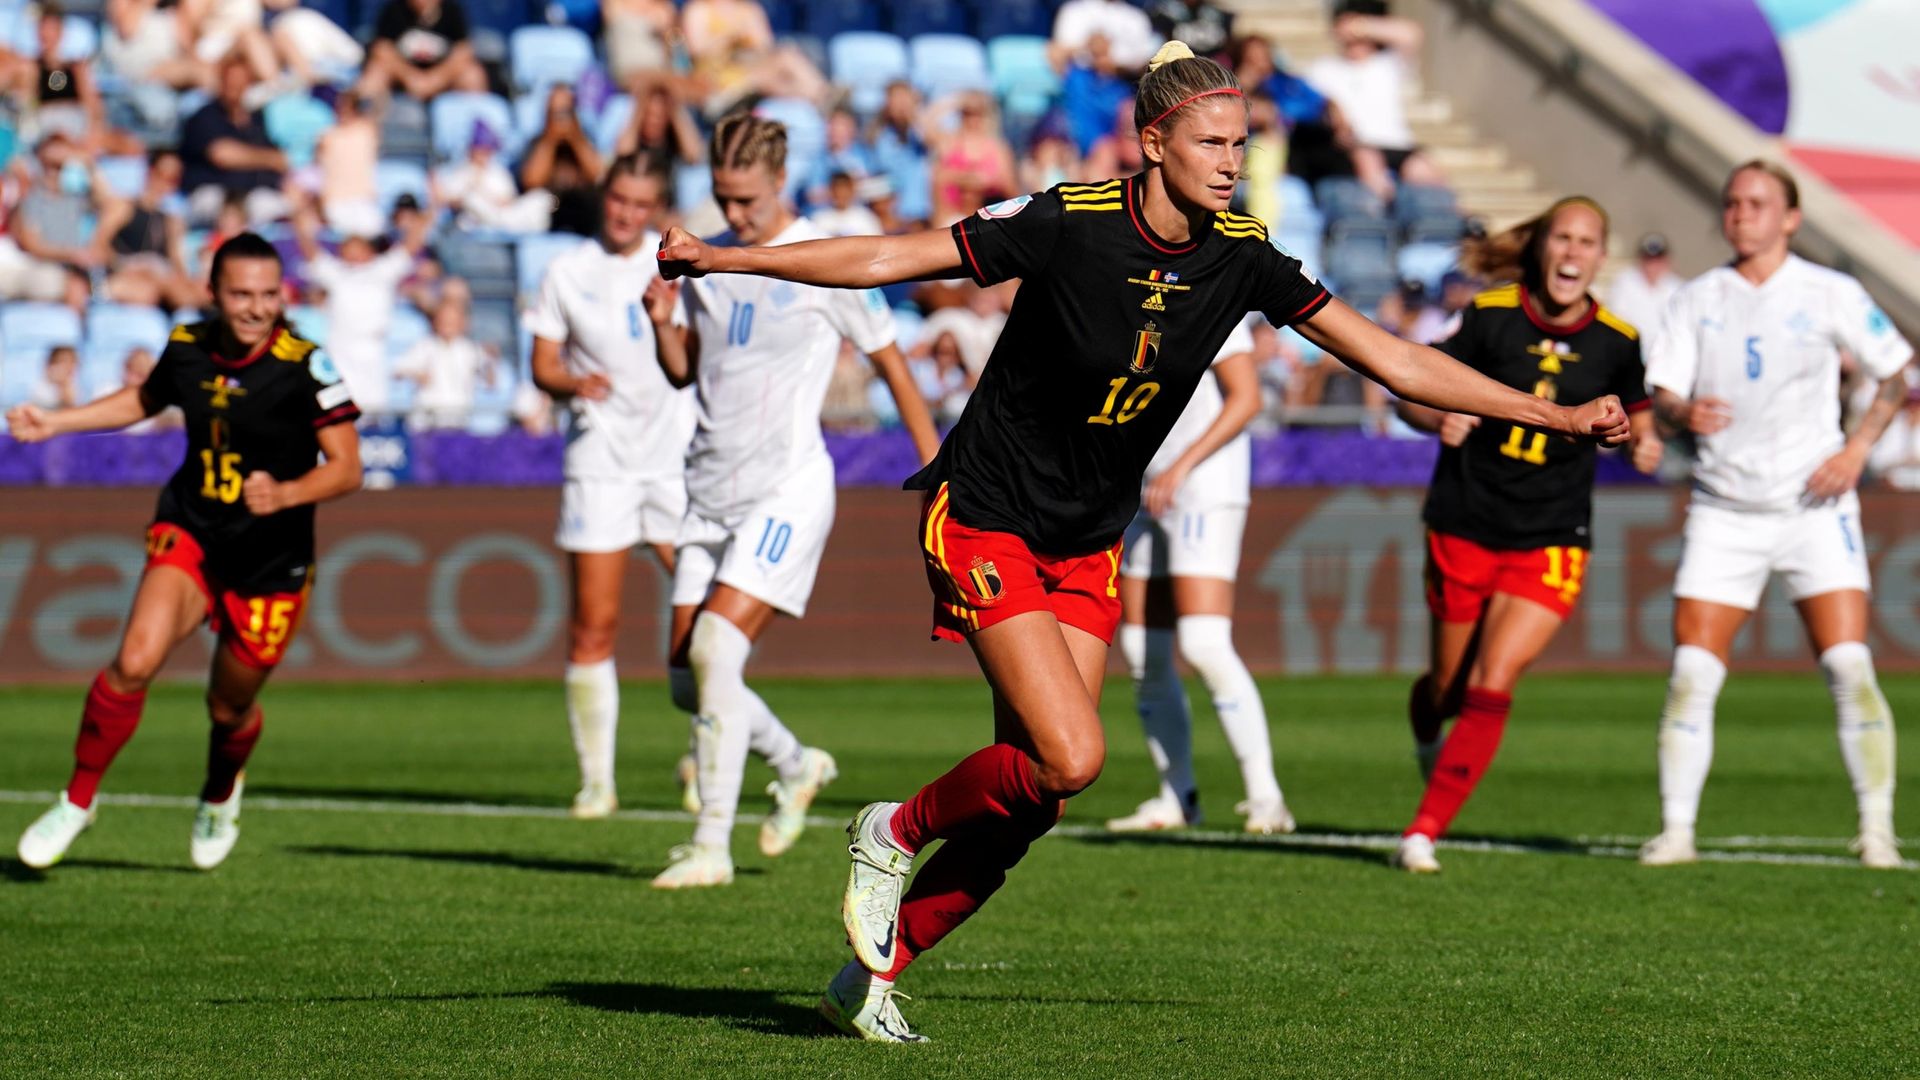 Vanhaevermaet rescues point for Belgium against Iceland